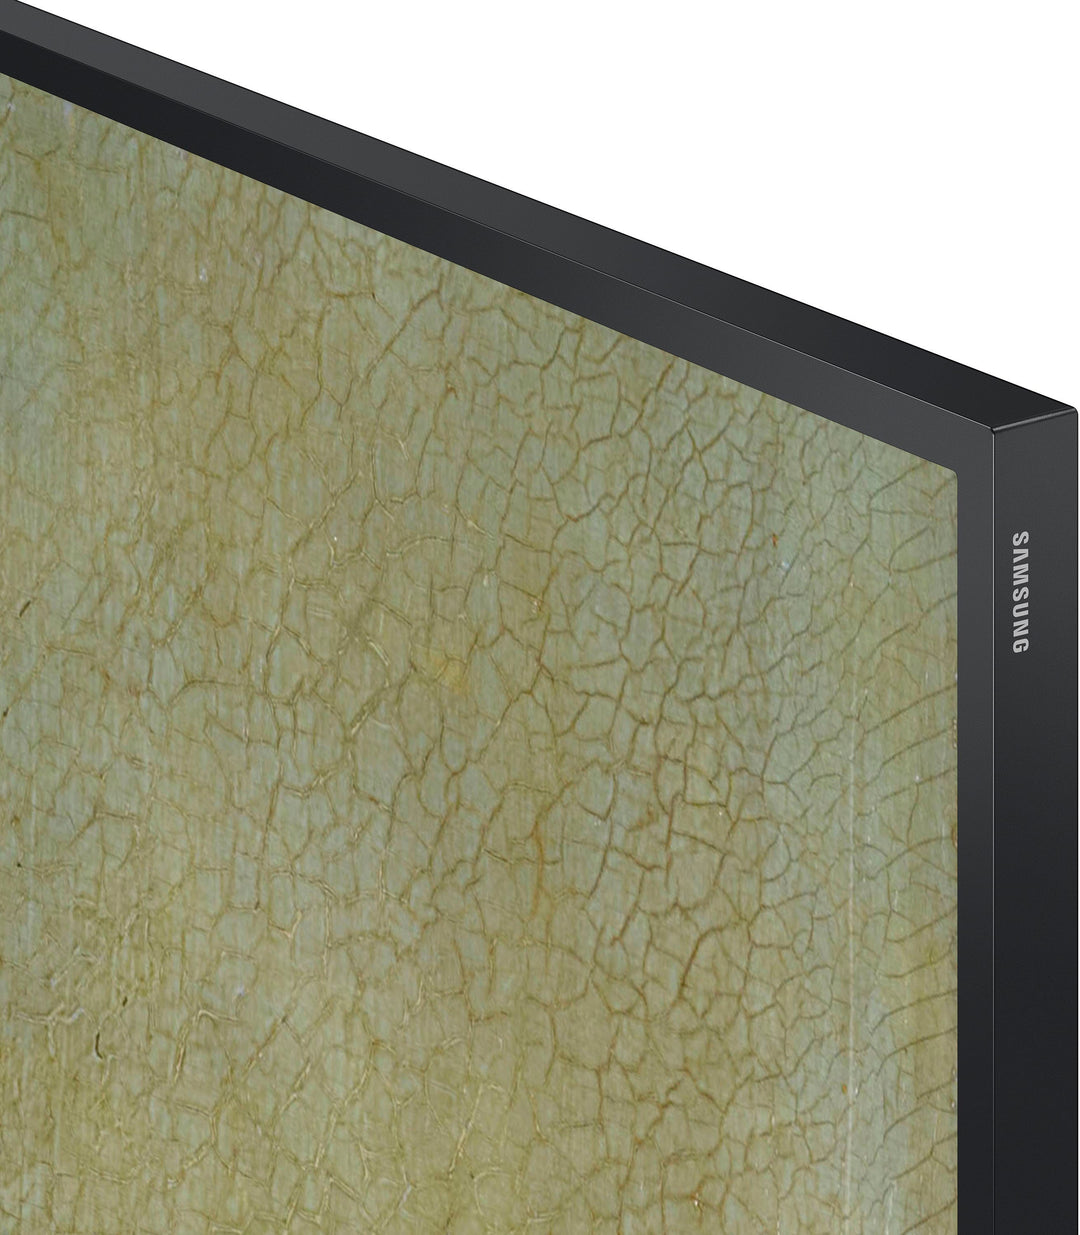 Samsung - 85" Class The Frame QLED 4k Smart Tizen TV_13